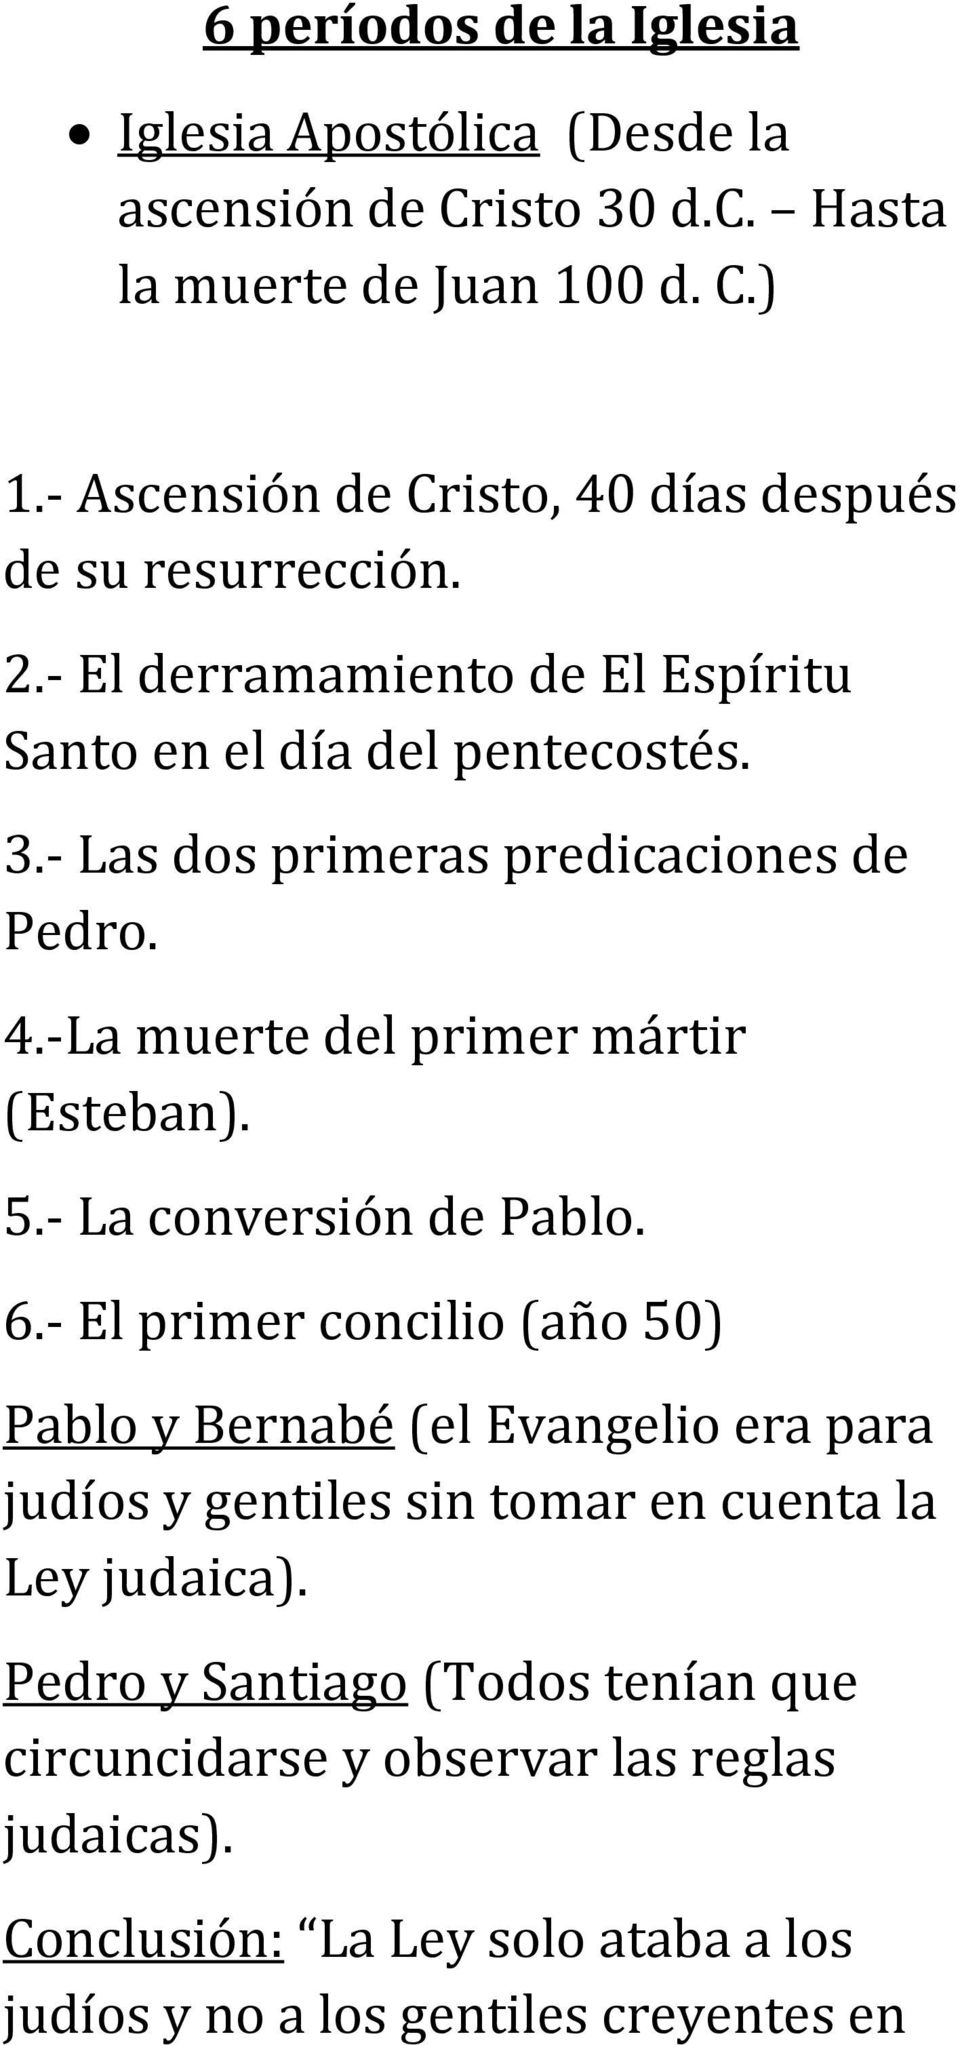 6 períodos de la Iglesia Por: Robidio Zeceña - PDF Free Download